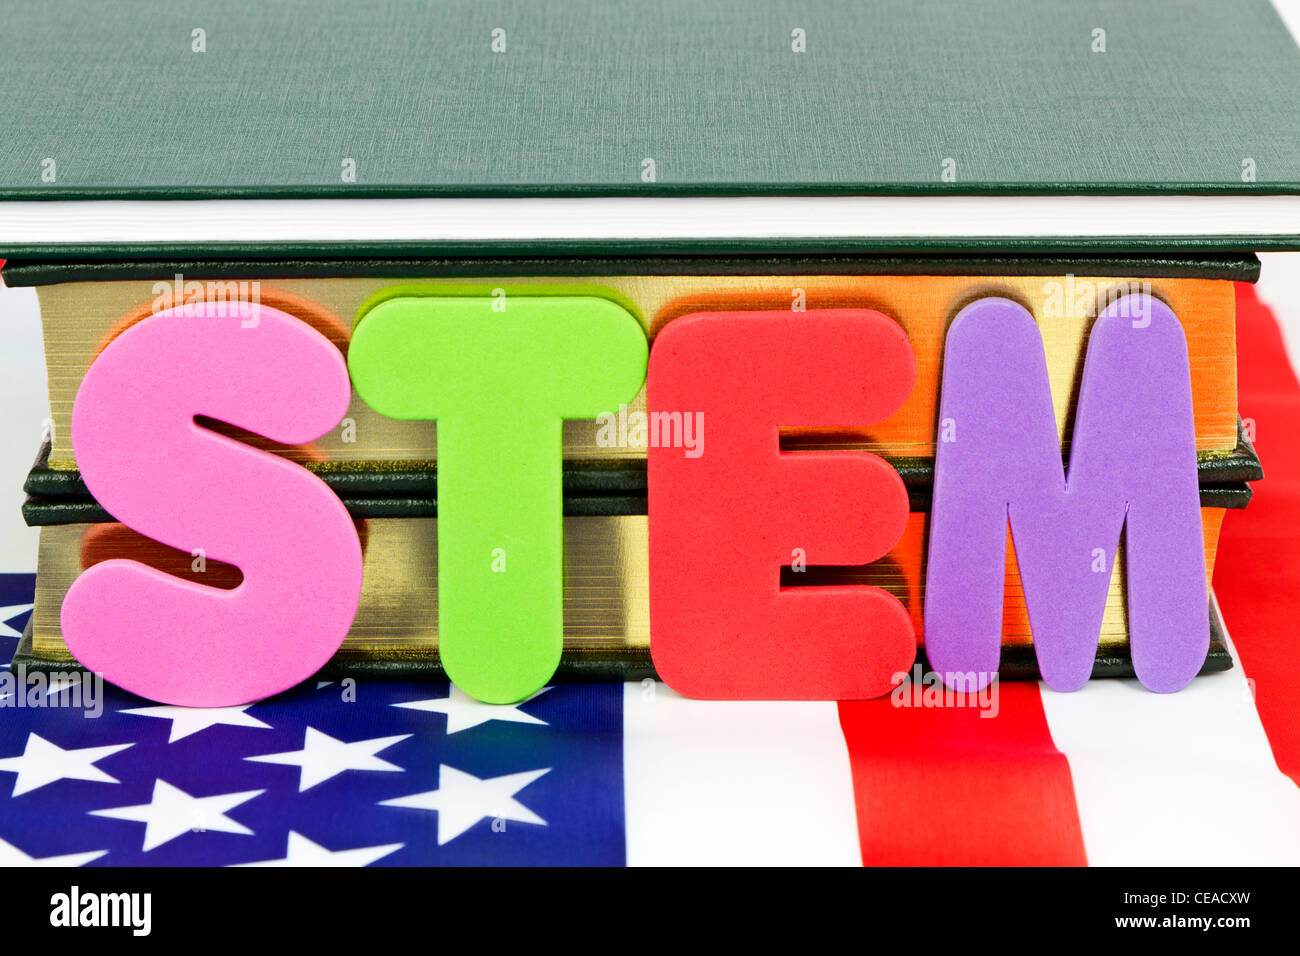 Las letras S, T, E, M, colocado antes de libros y sobre la bandera americana que representa la ciencia crítica e ingeniería. Foto de stock